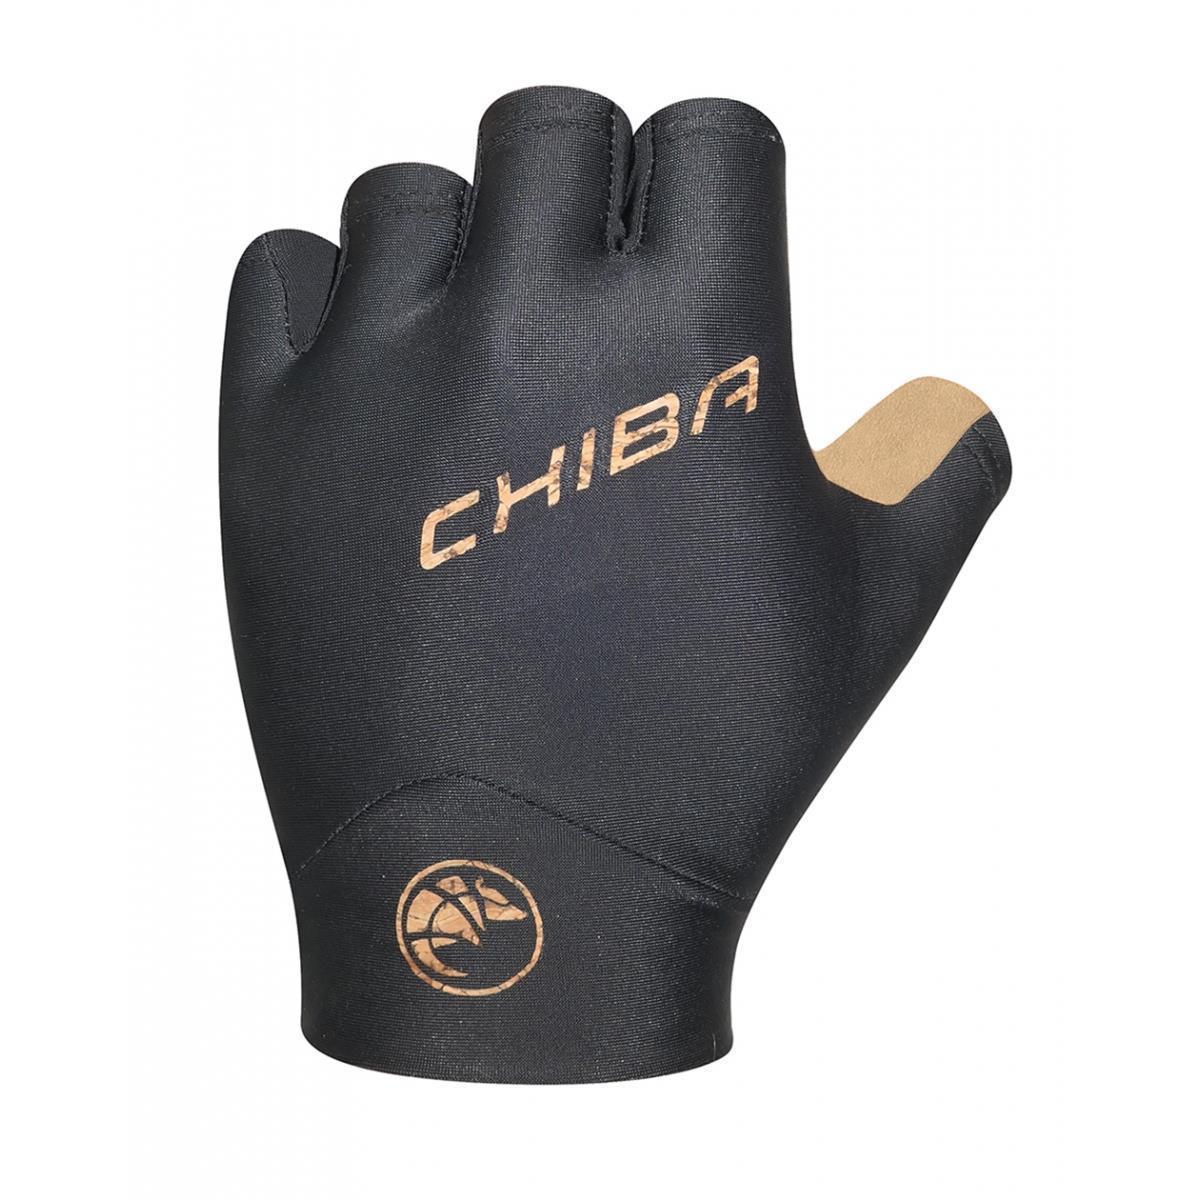 Chiba Handschuh ECO Glove Pro L schwarz